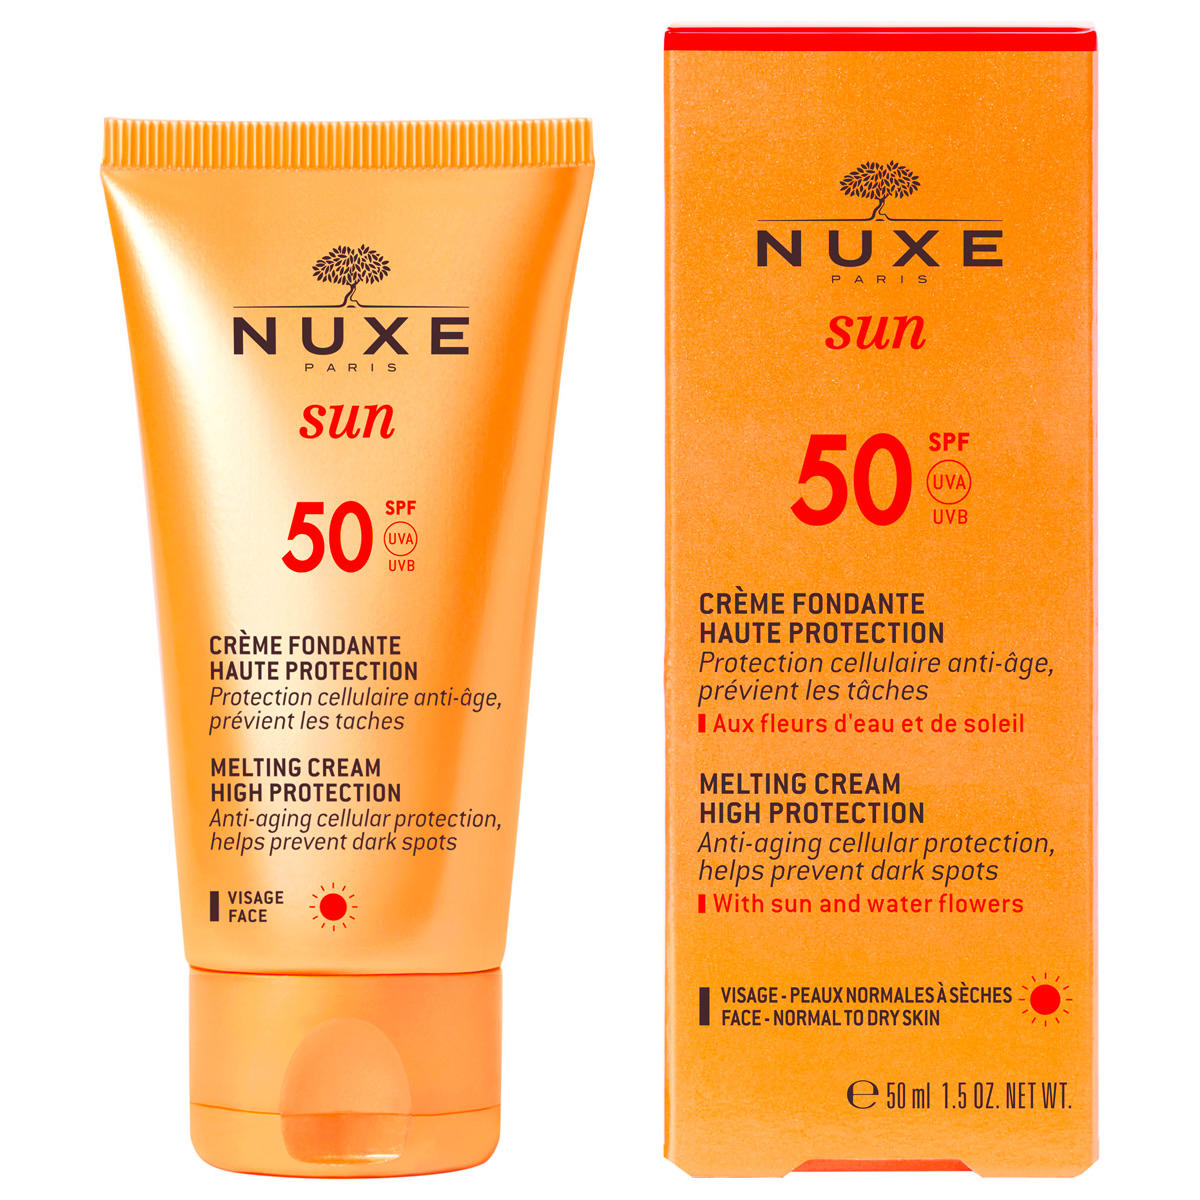 NUXE Sun Crème fondante haute protection SFP 50 50 ml - 3